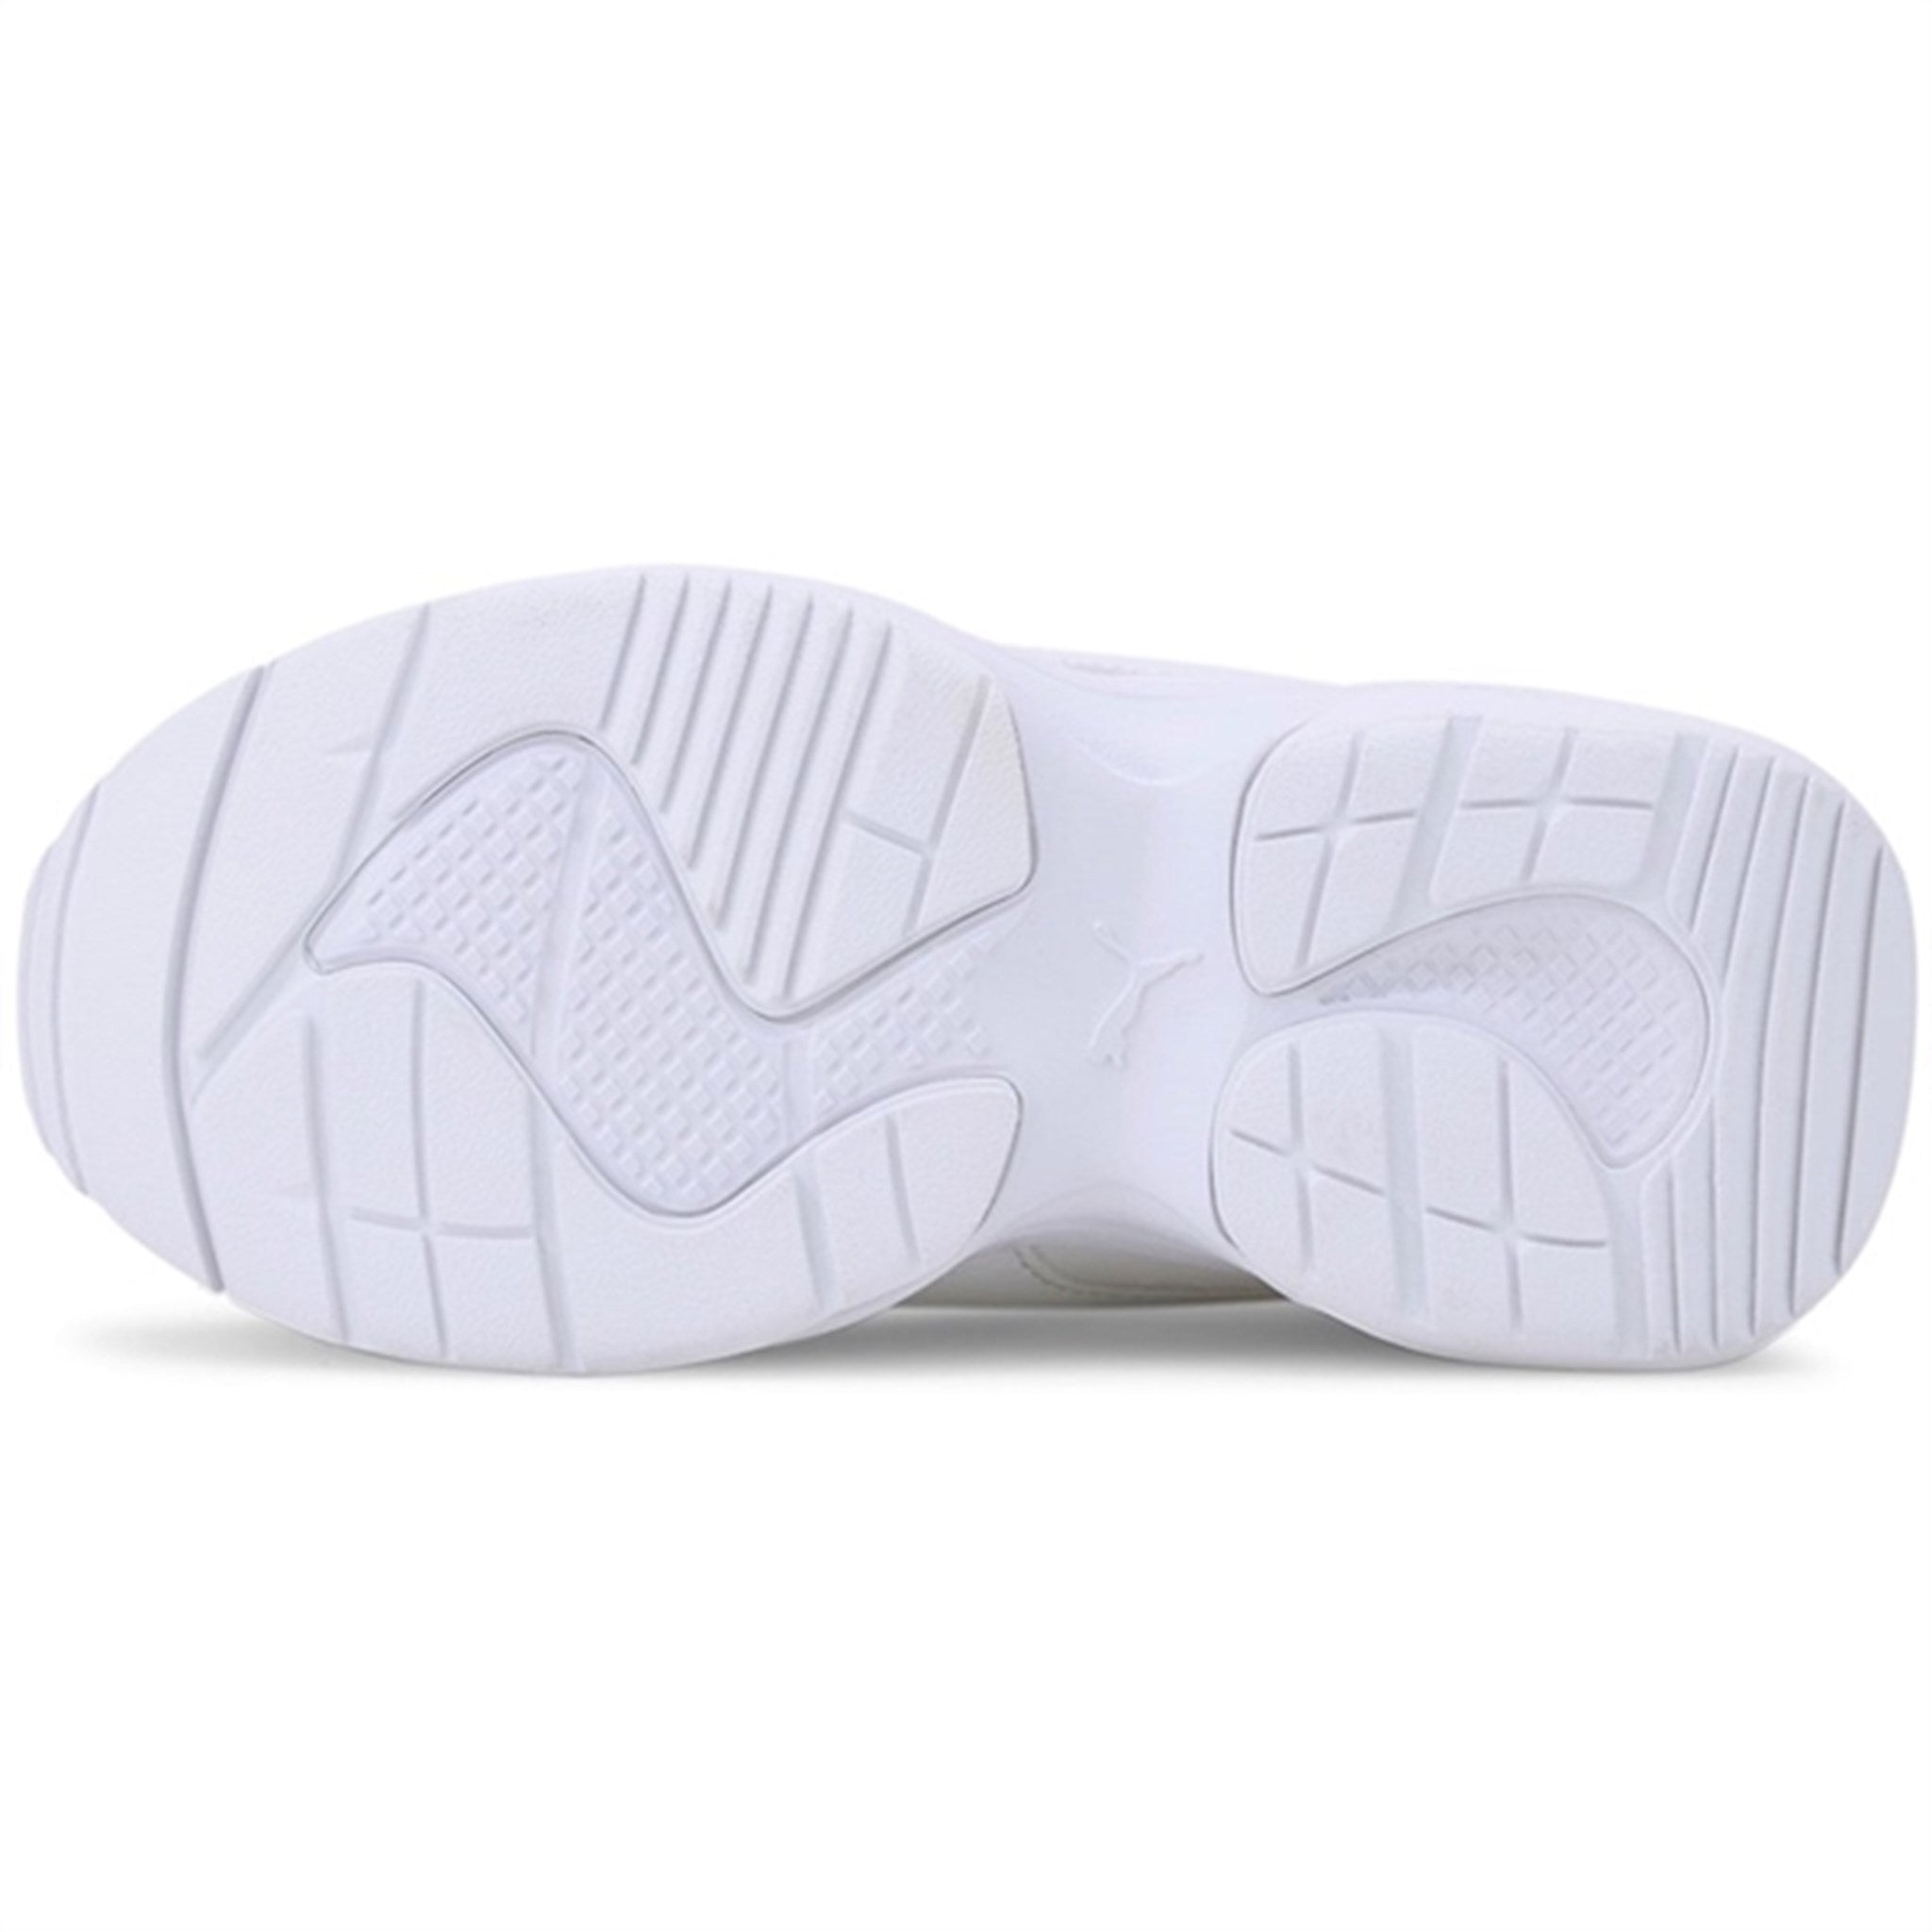 Puma Cilia Mode PS White-Silver-Gray Violet Sneakers 5